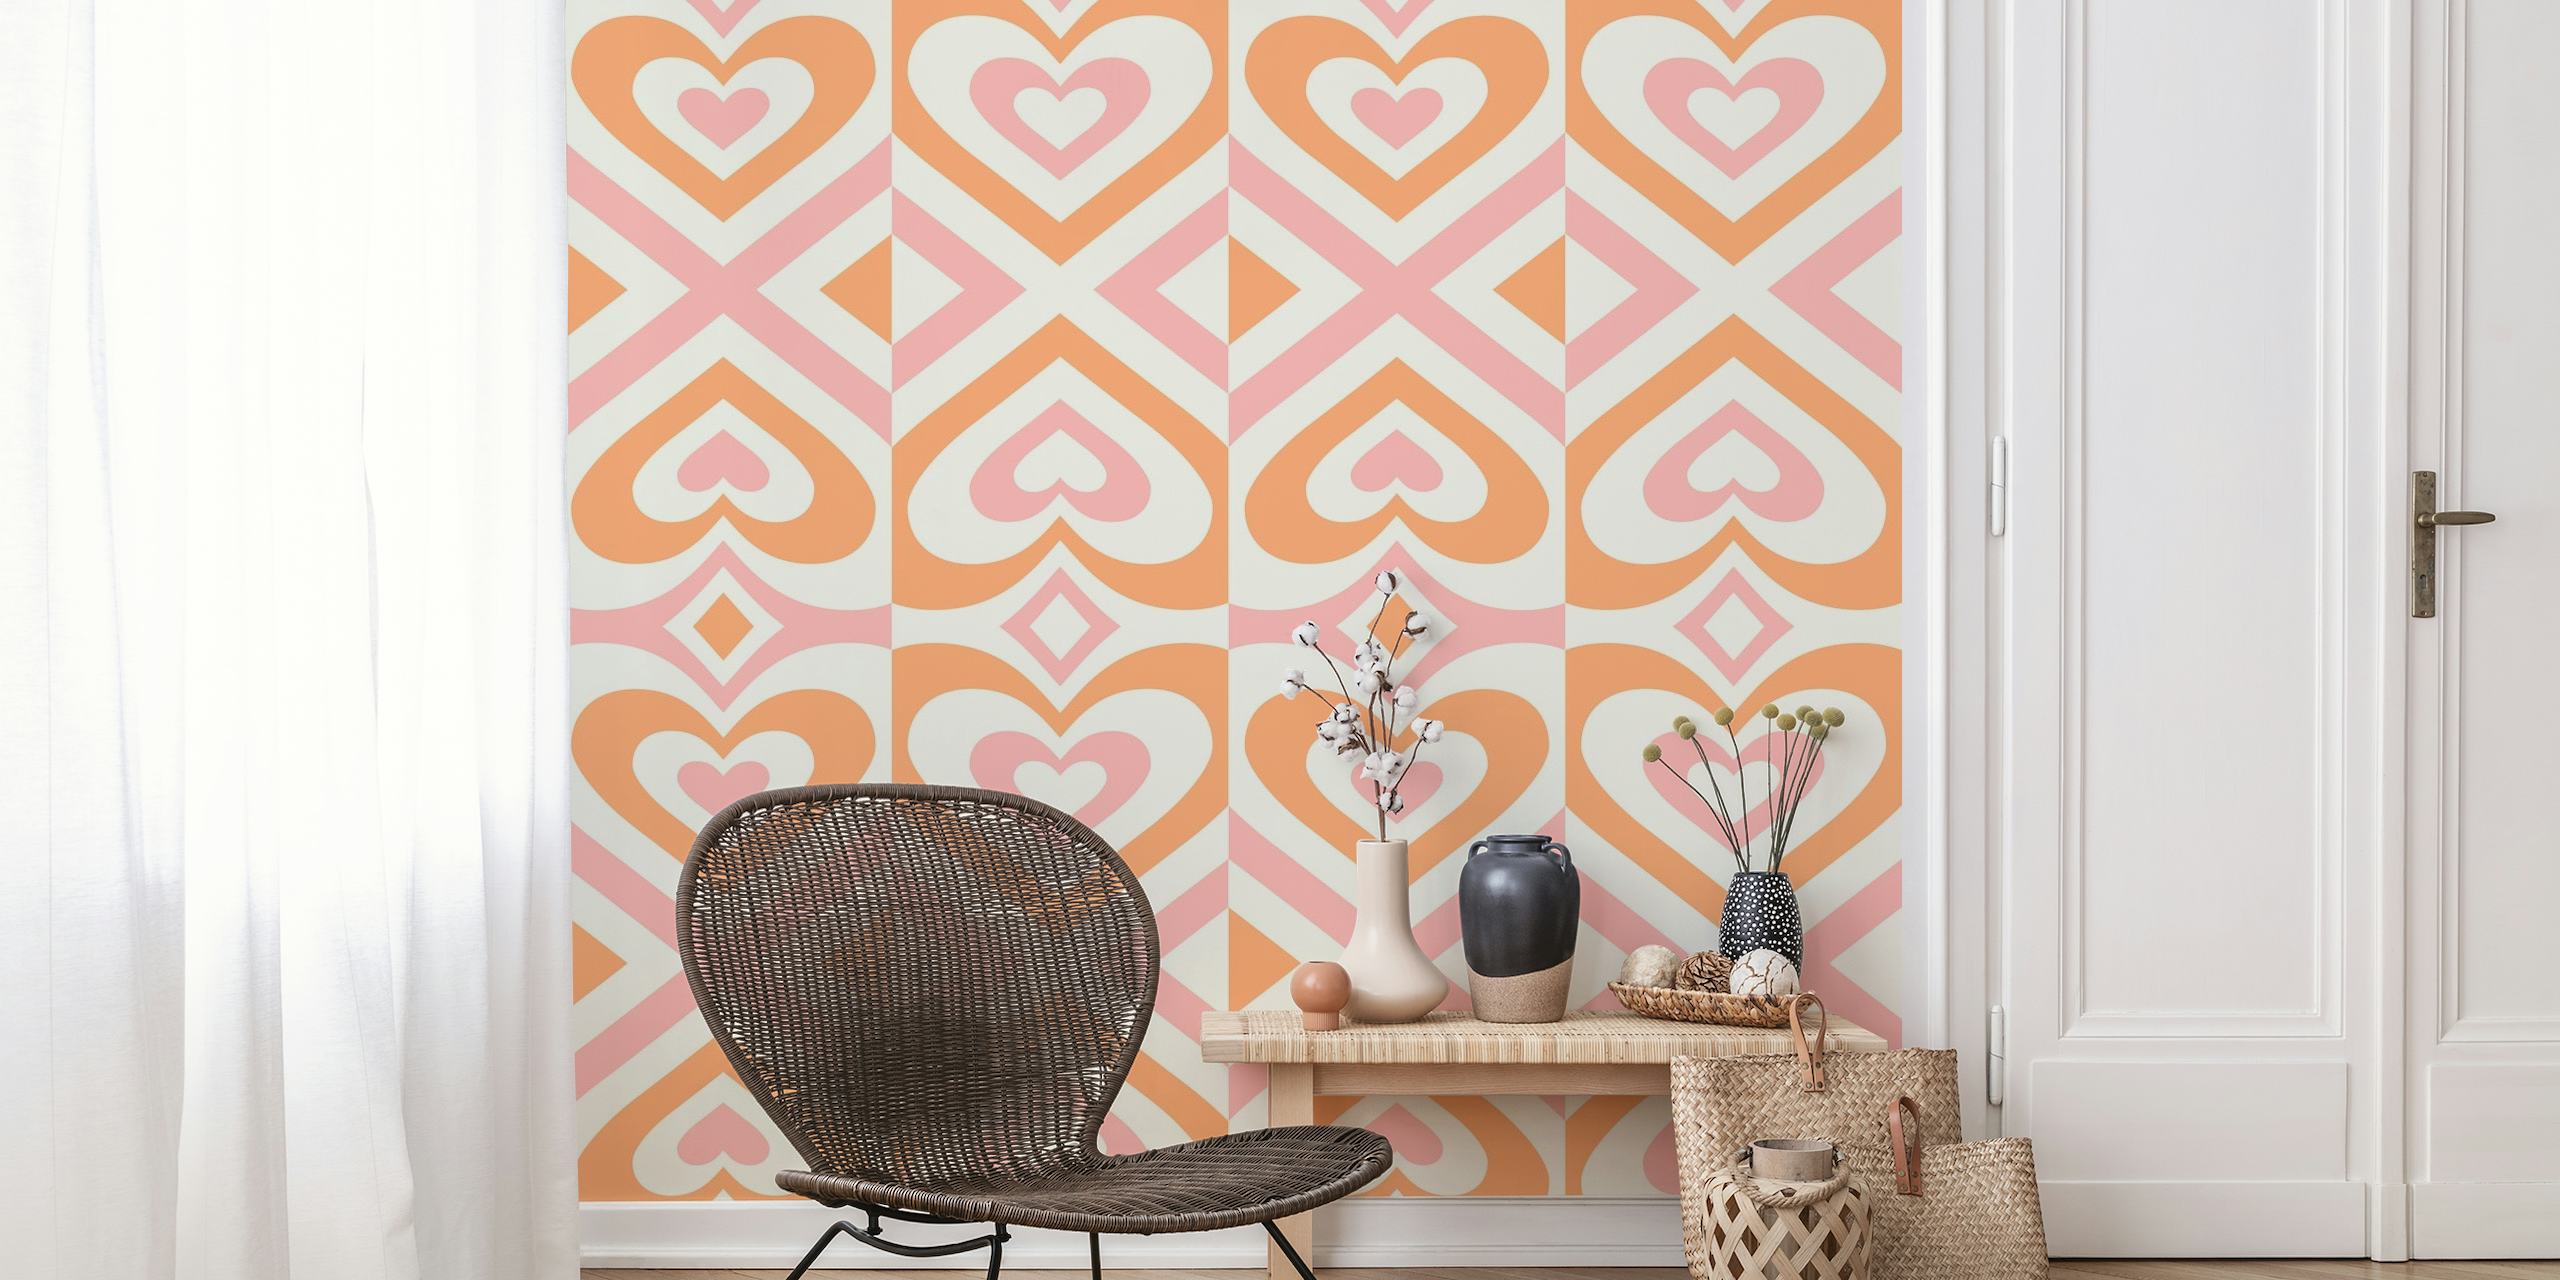 Mural de parede Hypnotic Hearts Patterns em cores quentes com desenhos de coração entrelaçados